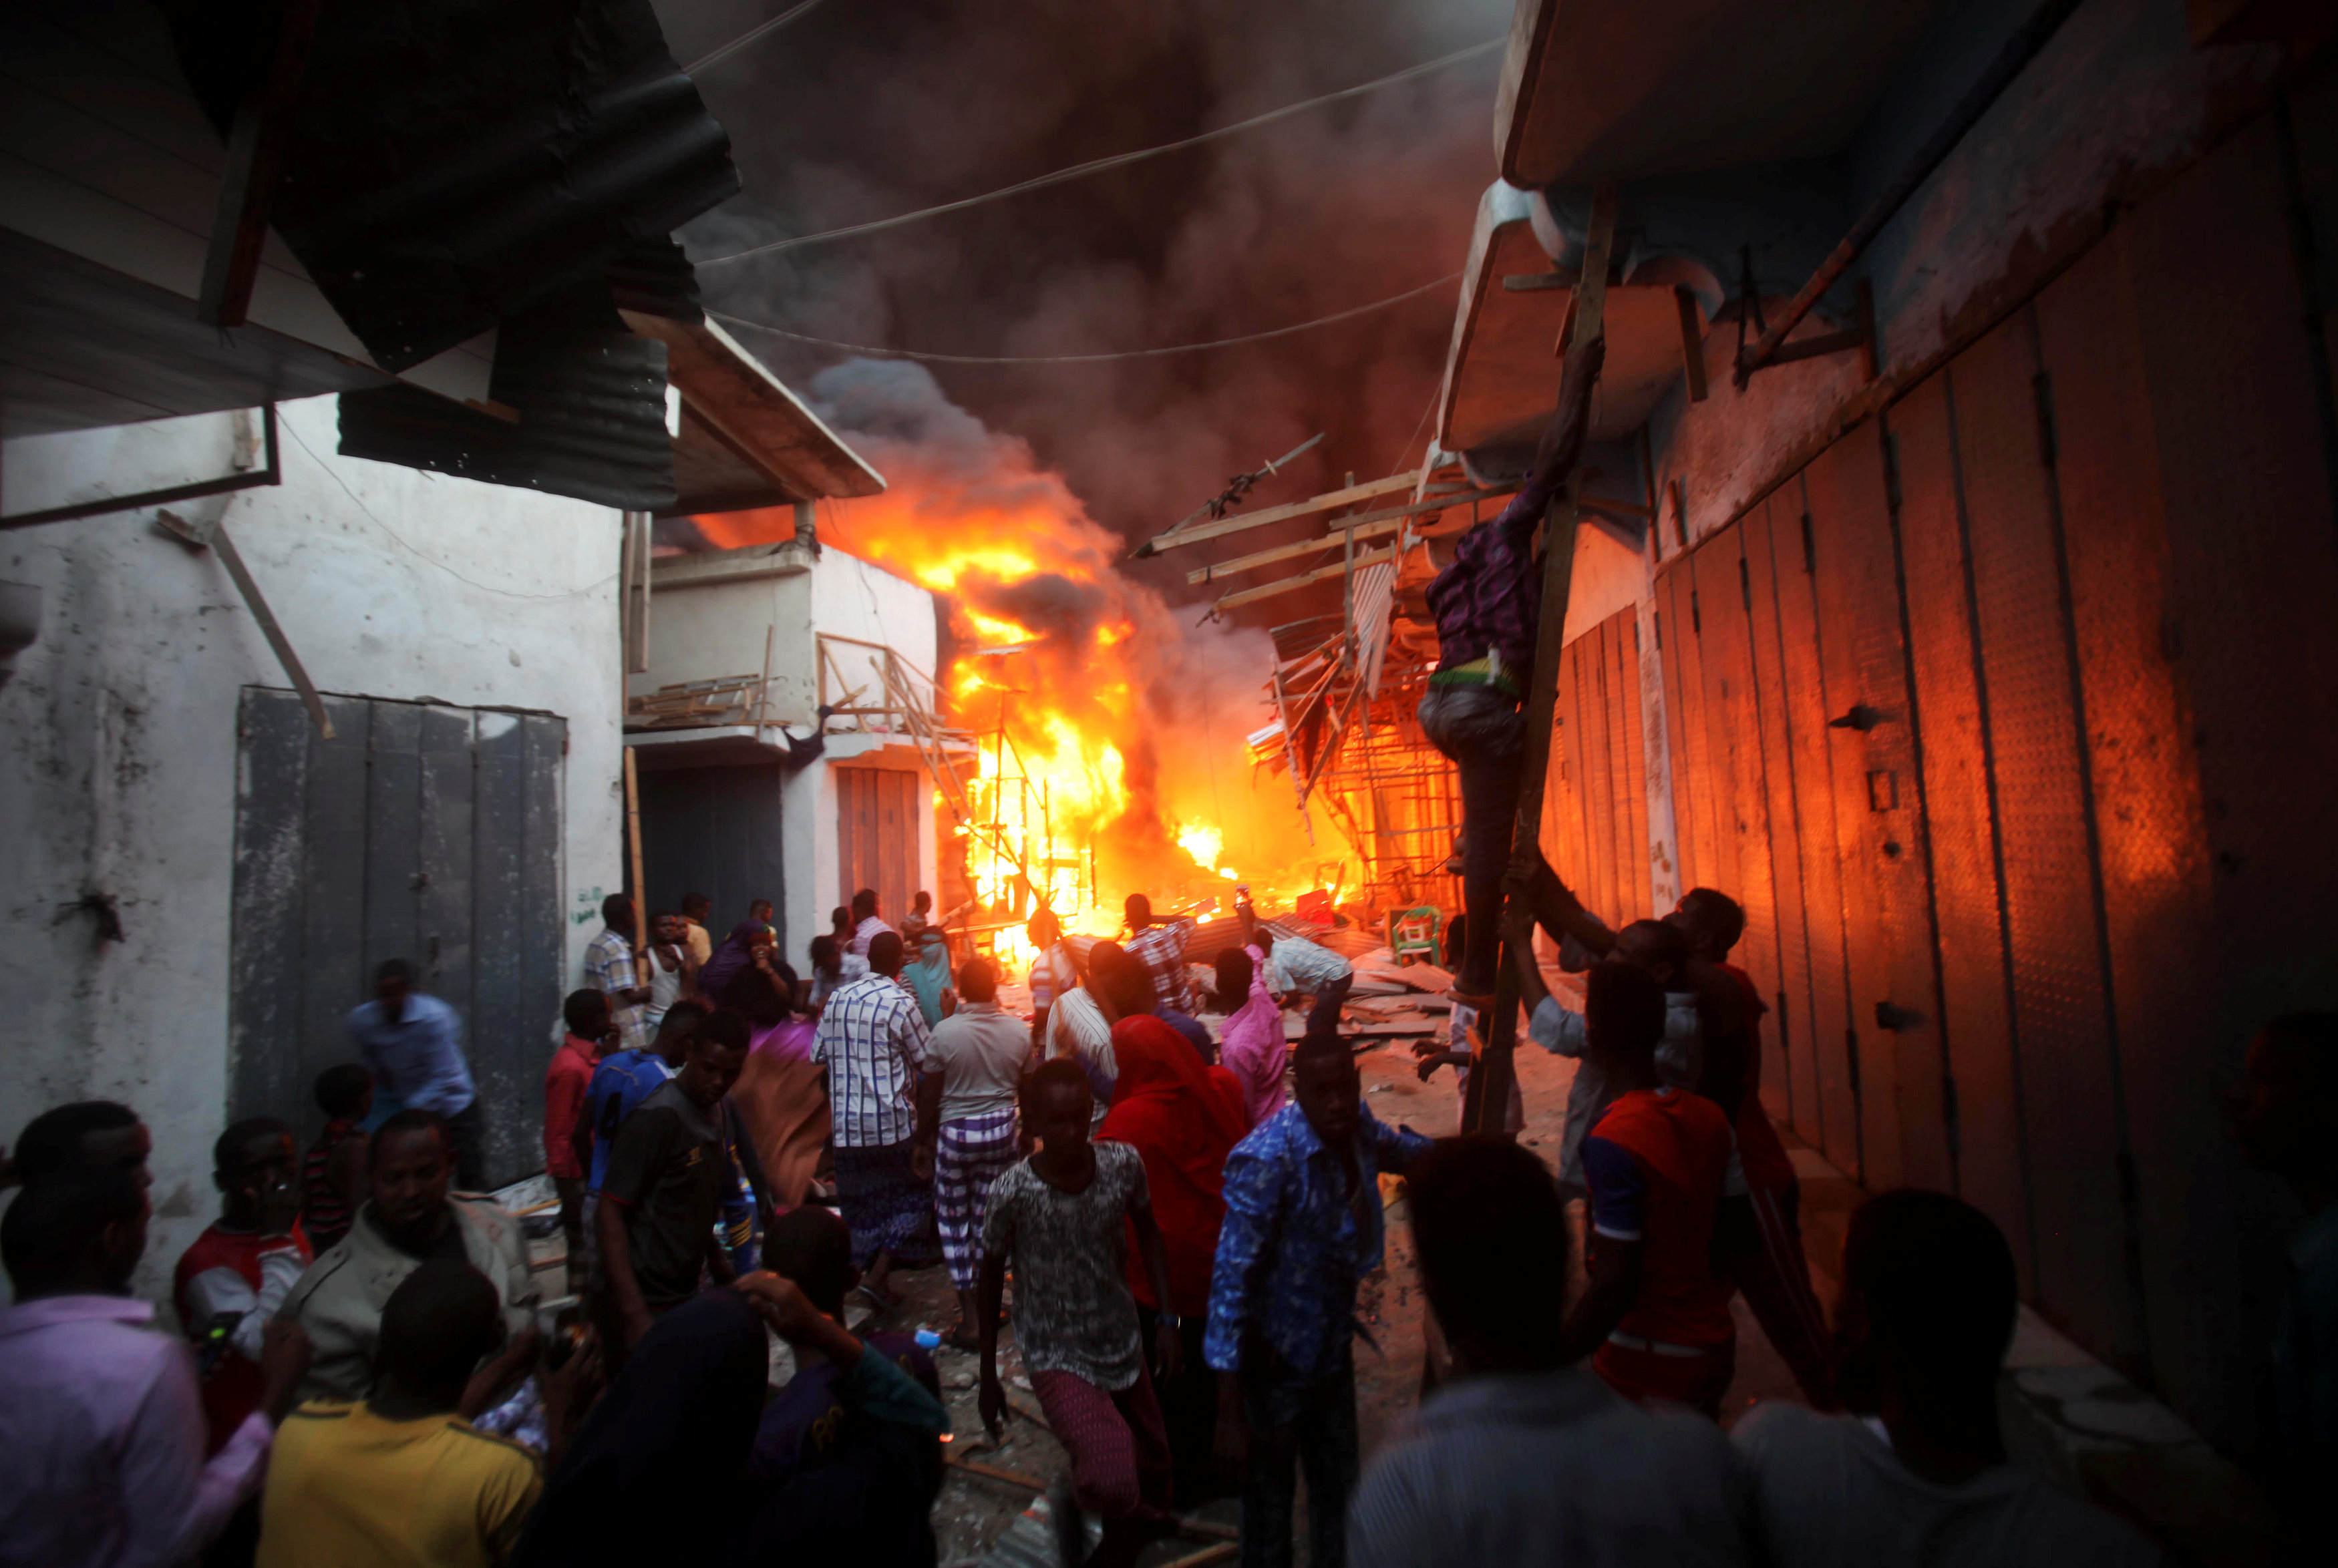 مواطنون يحتشدون خارج النيران المشتعلة فى سوق بالصومال